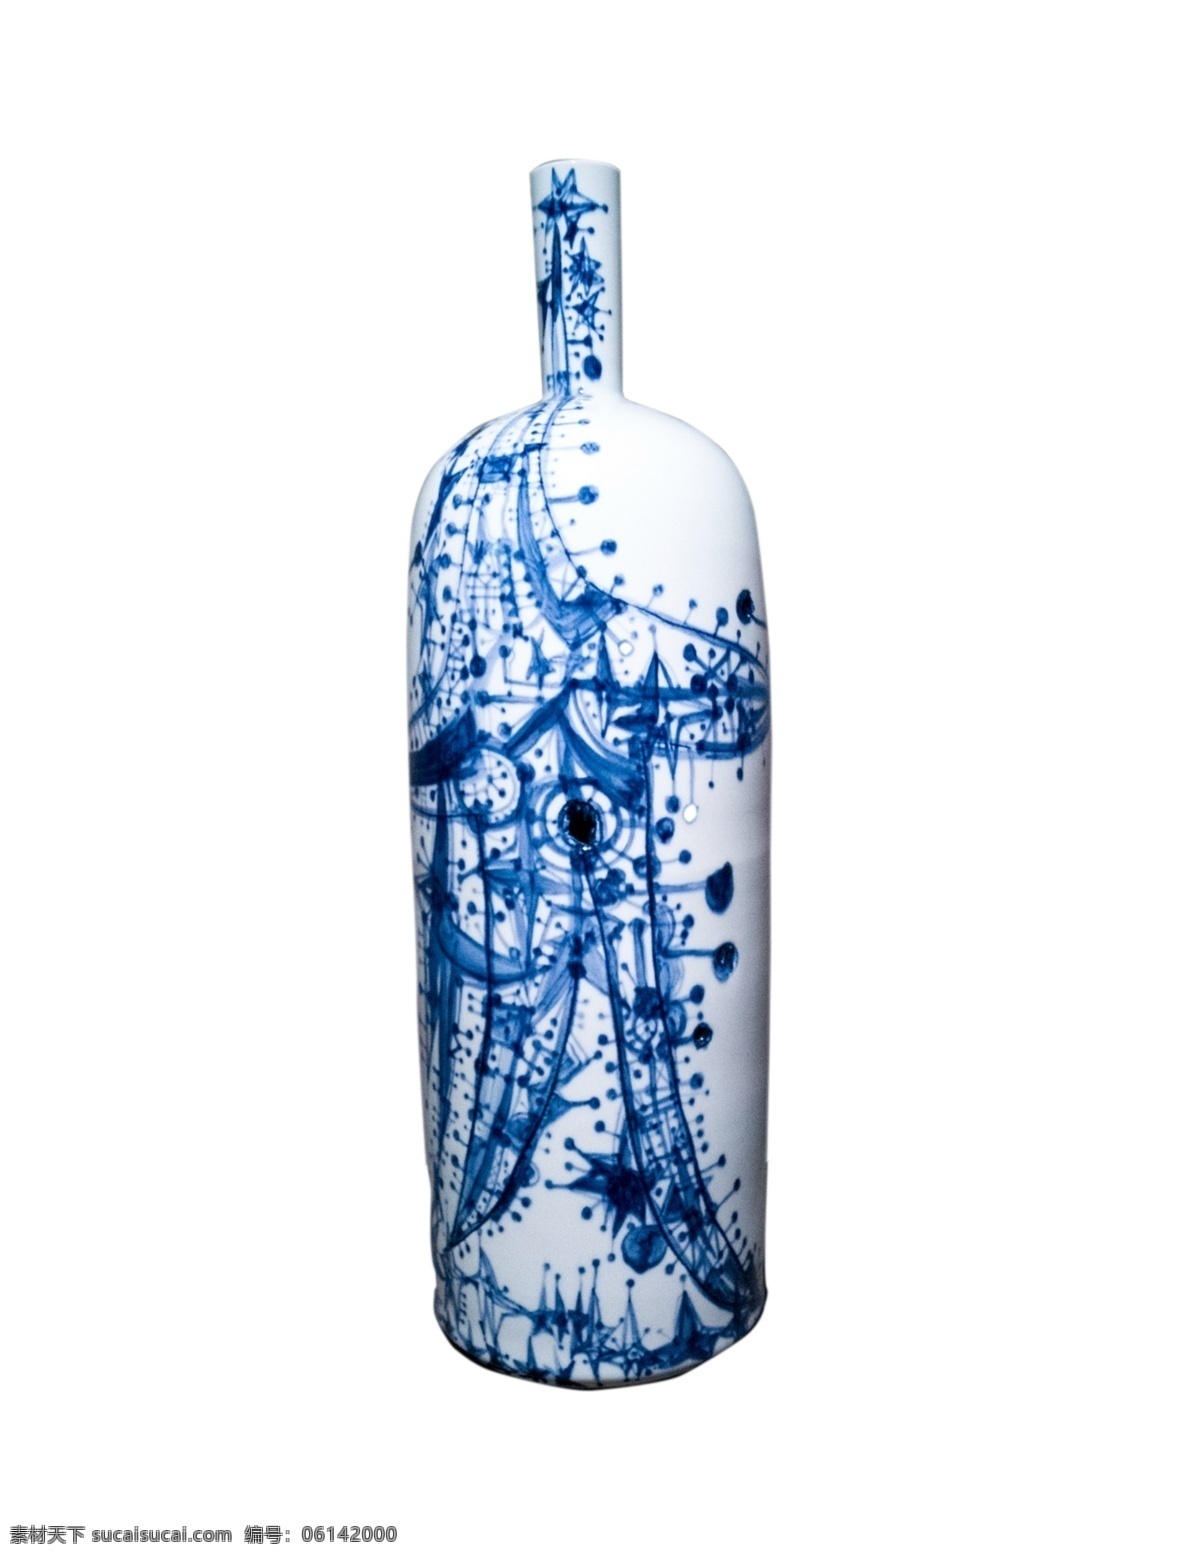 青花瓷 中国 风 陶瓷 瓶 花瓶摆件 陶瓷摆件 陶瓷花瓶 青色花瓶 装饰品 容器 瓶子 花瓶